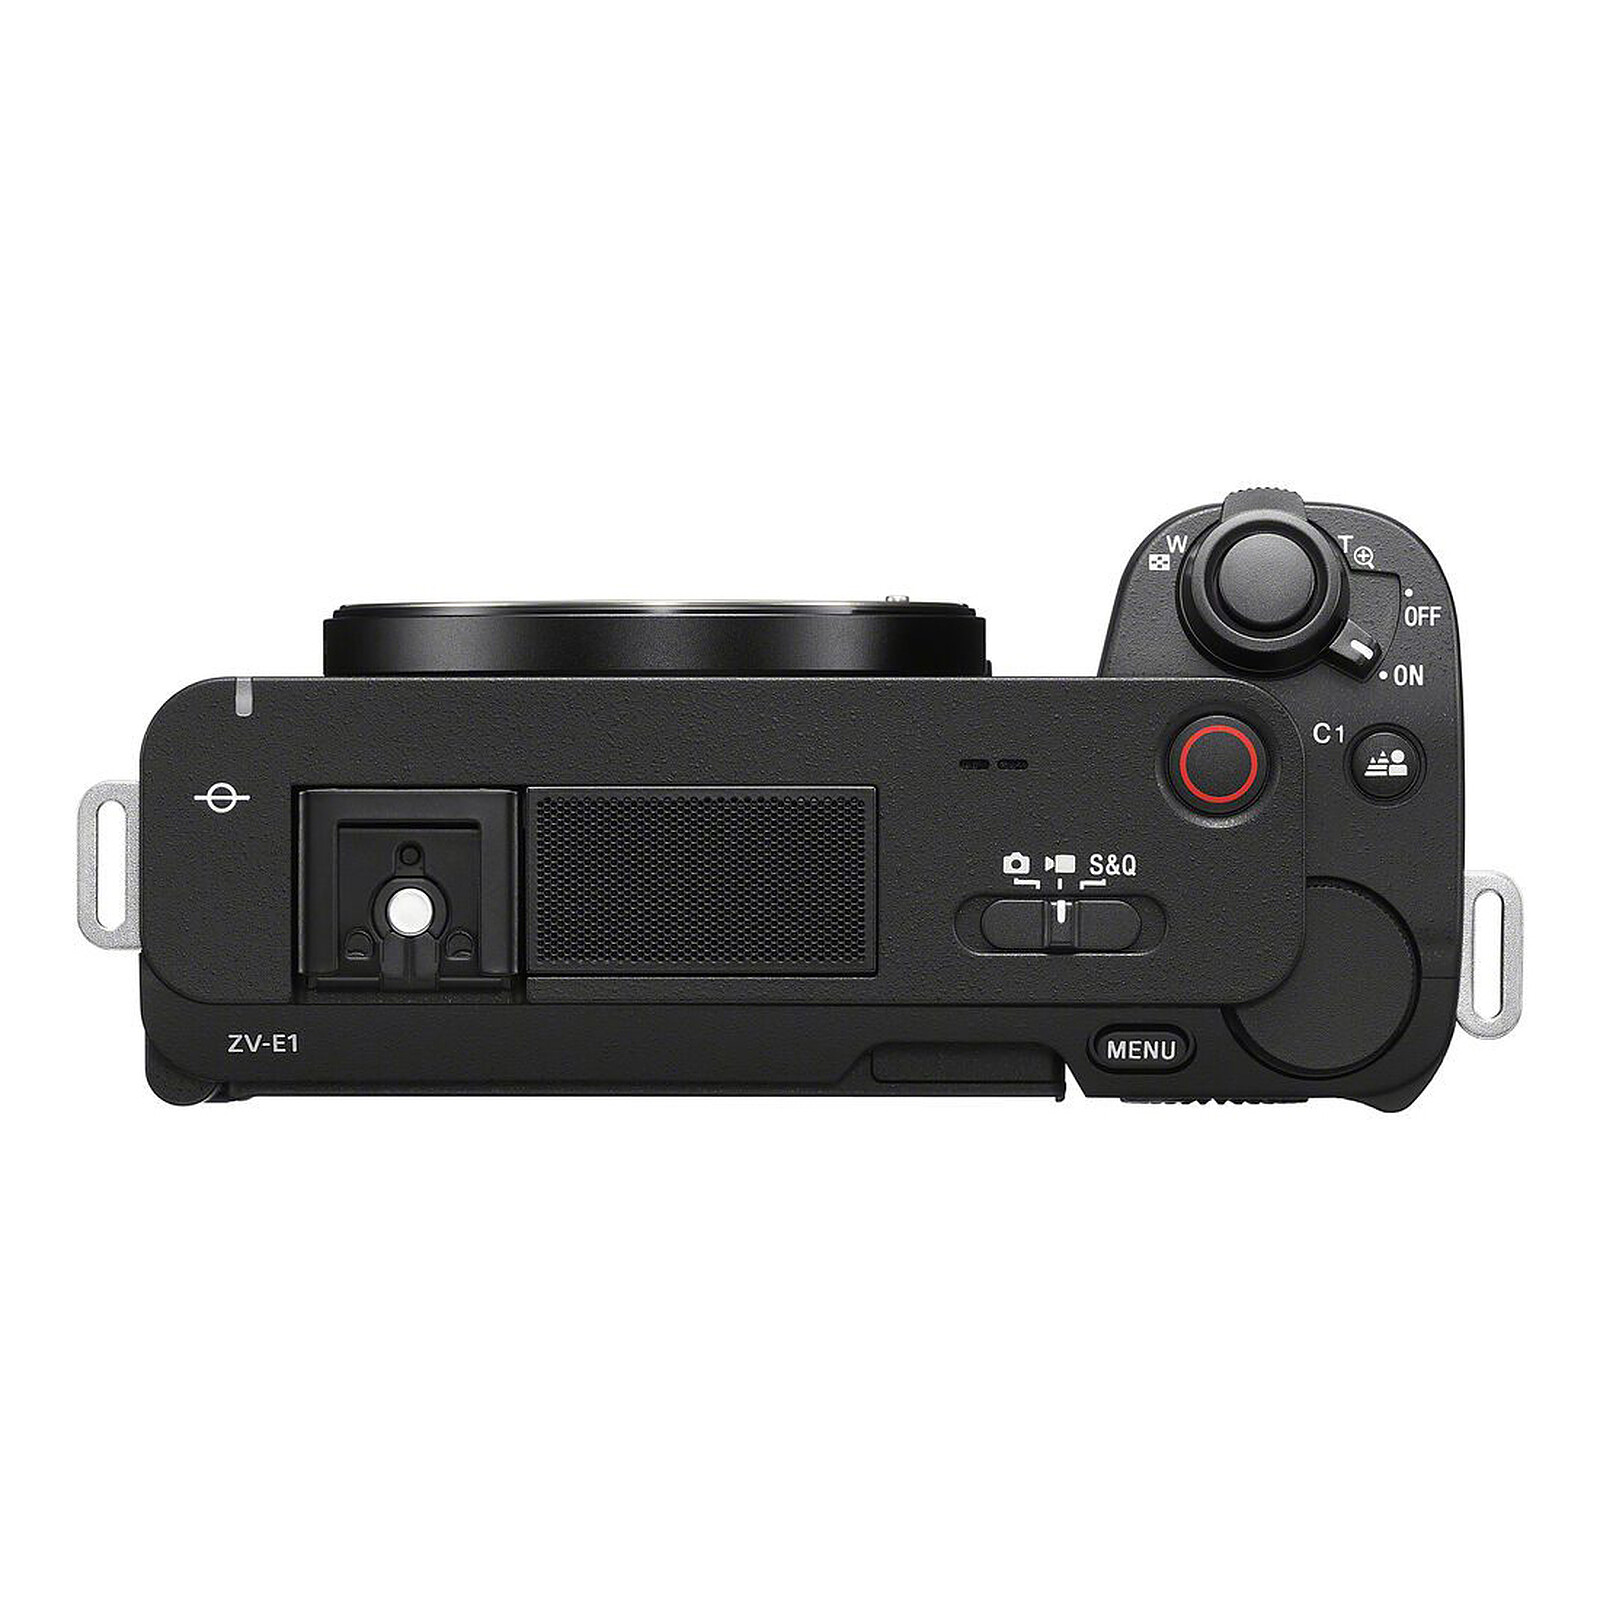 Sony Alpha 6700 + 18-135mm - Cámara híbrida - LDLC